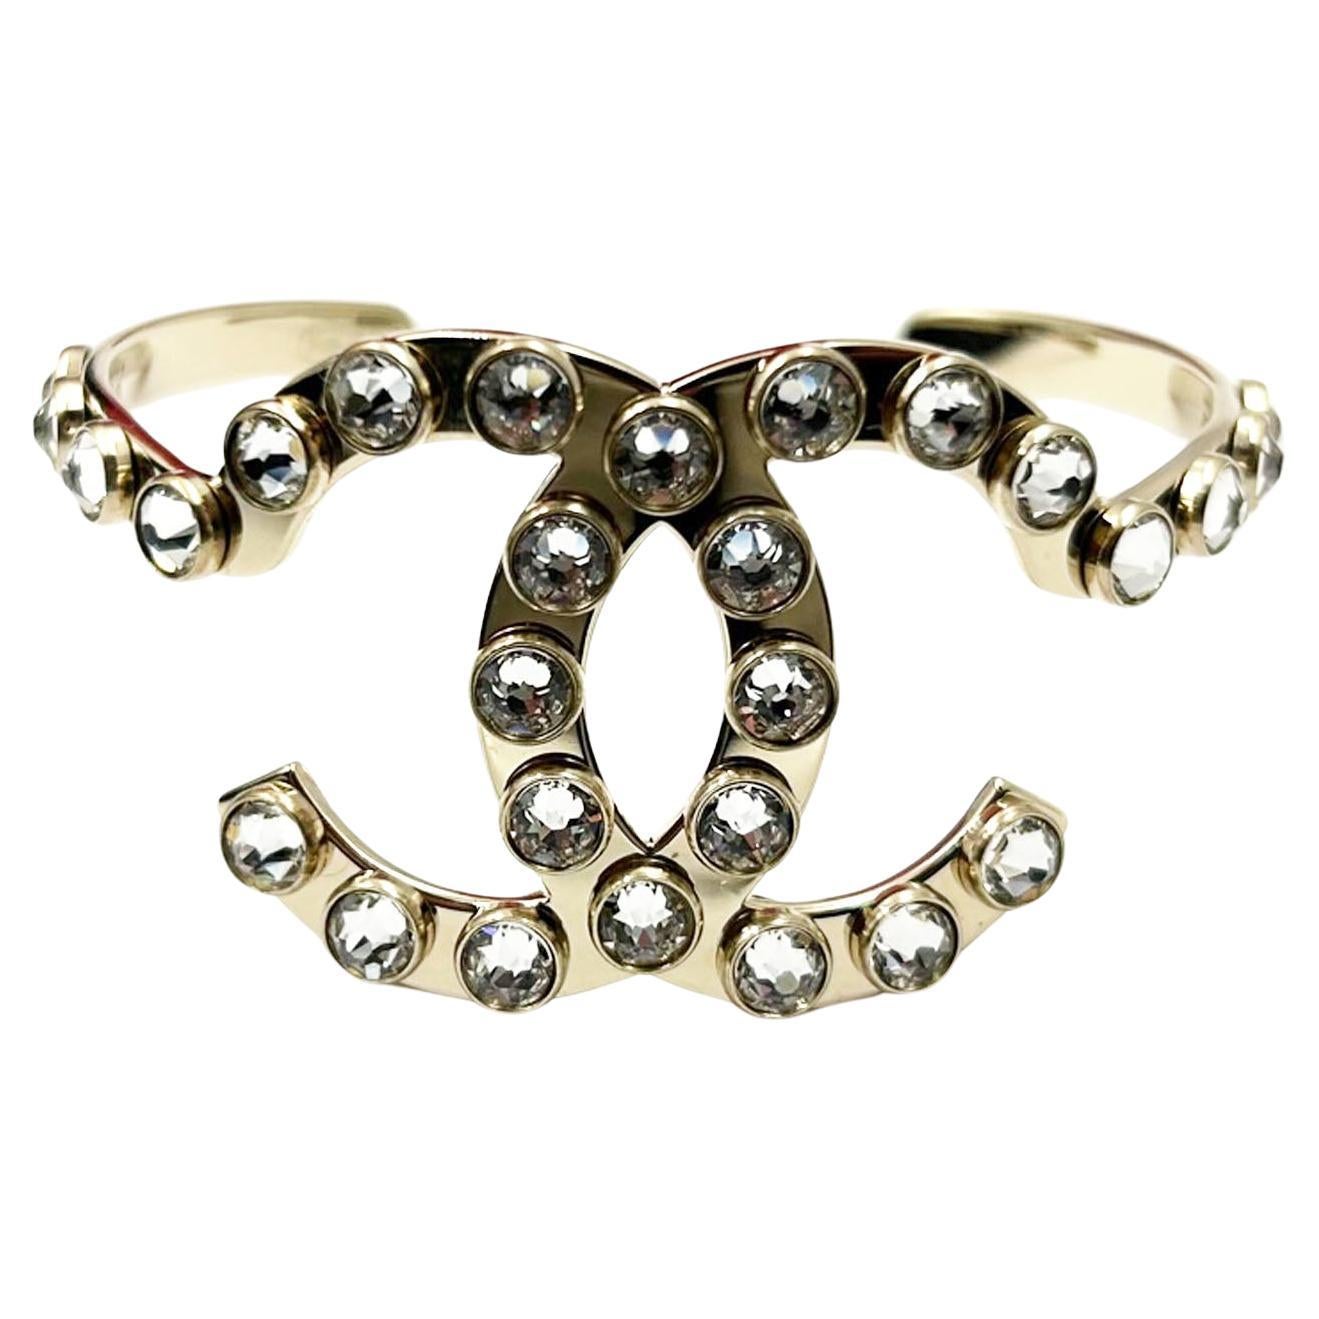 Chanel Crystal Bracelet - 82 For Sale on 1stDibs